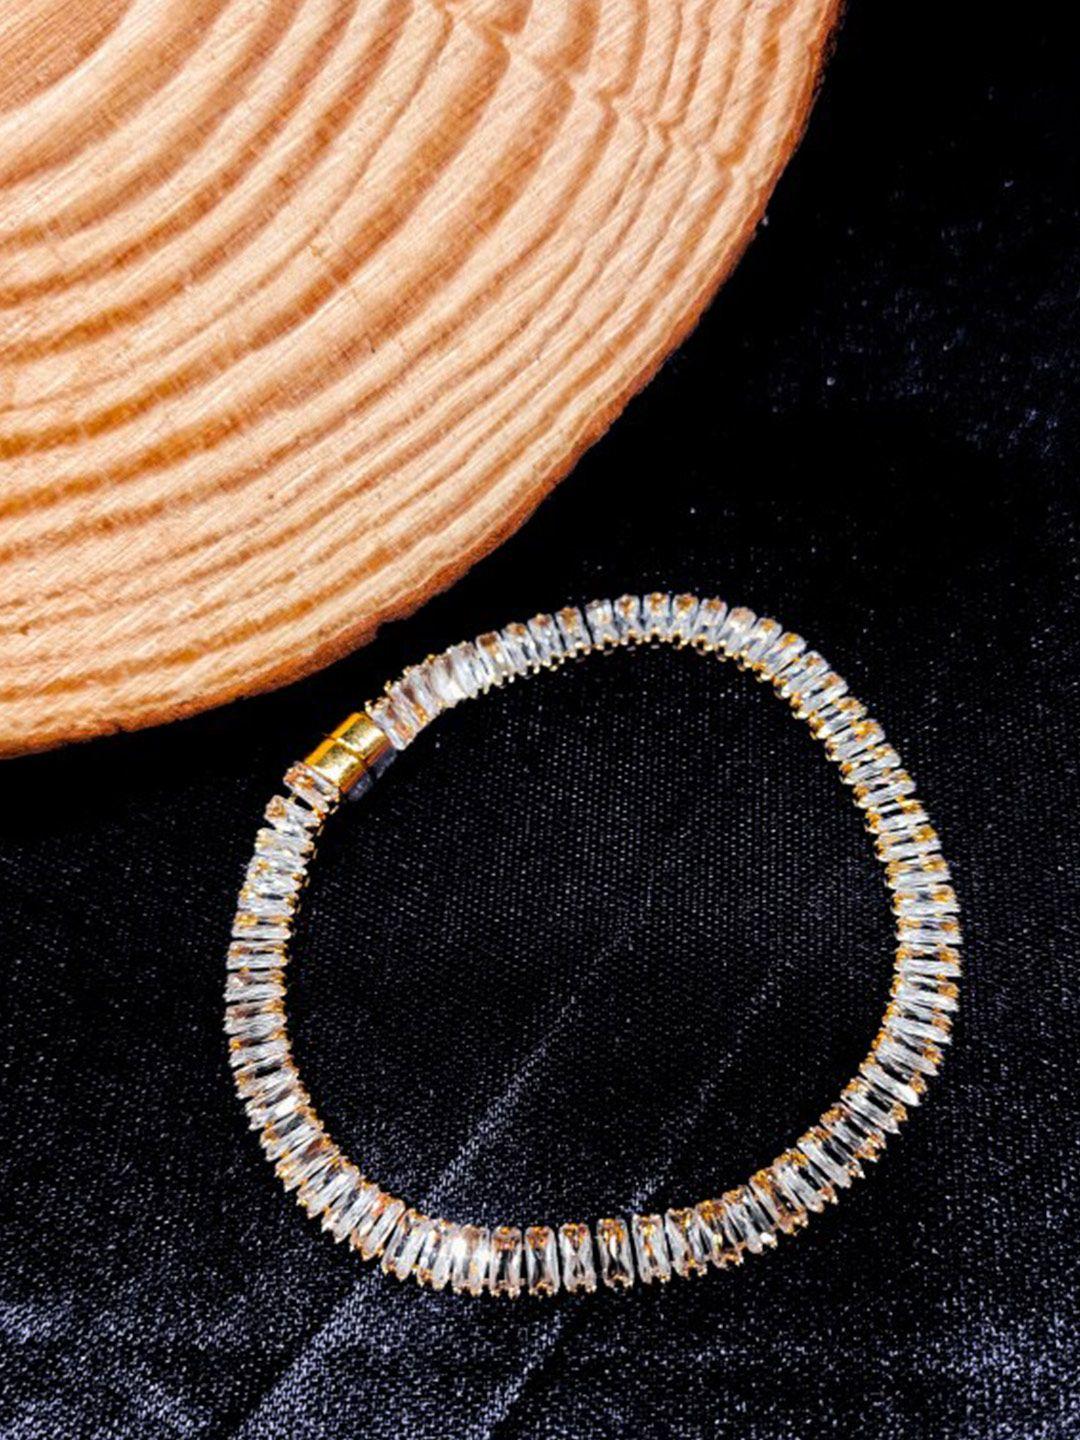 femmibella rose gold plated cz stone wraparound bracelet